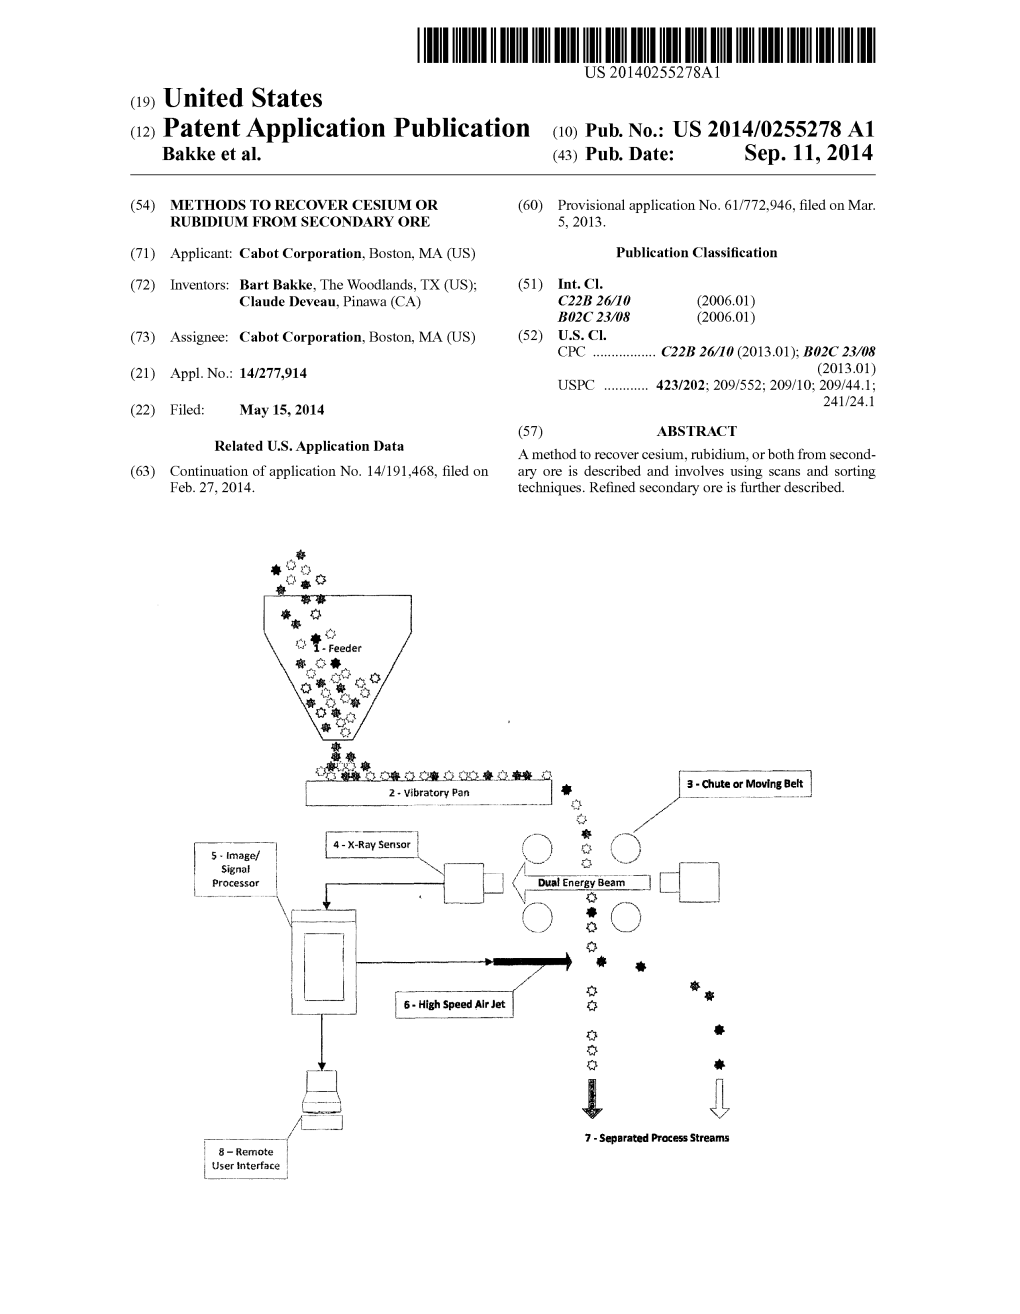 (12) Patent Application Publication (10) Pub. No.: US 2014/0255278 A1 Bakke Et Al